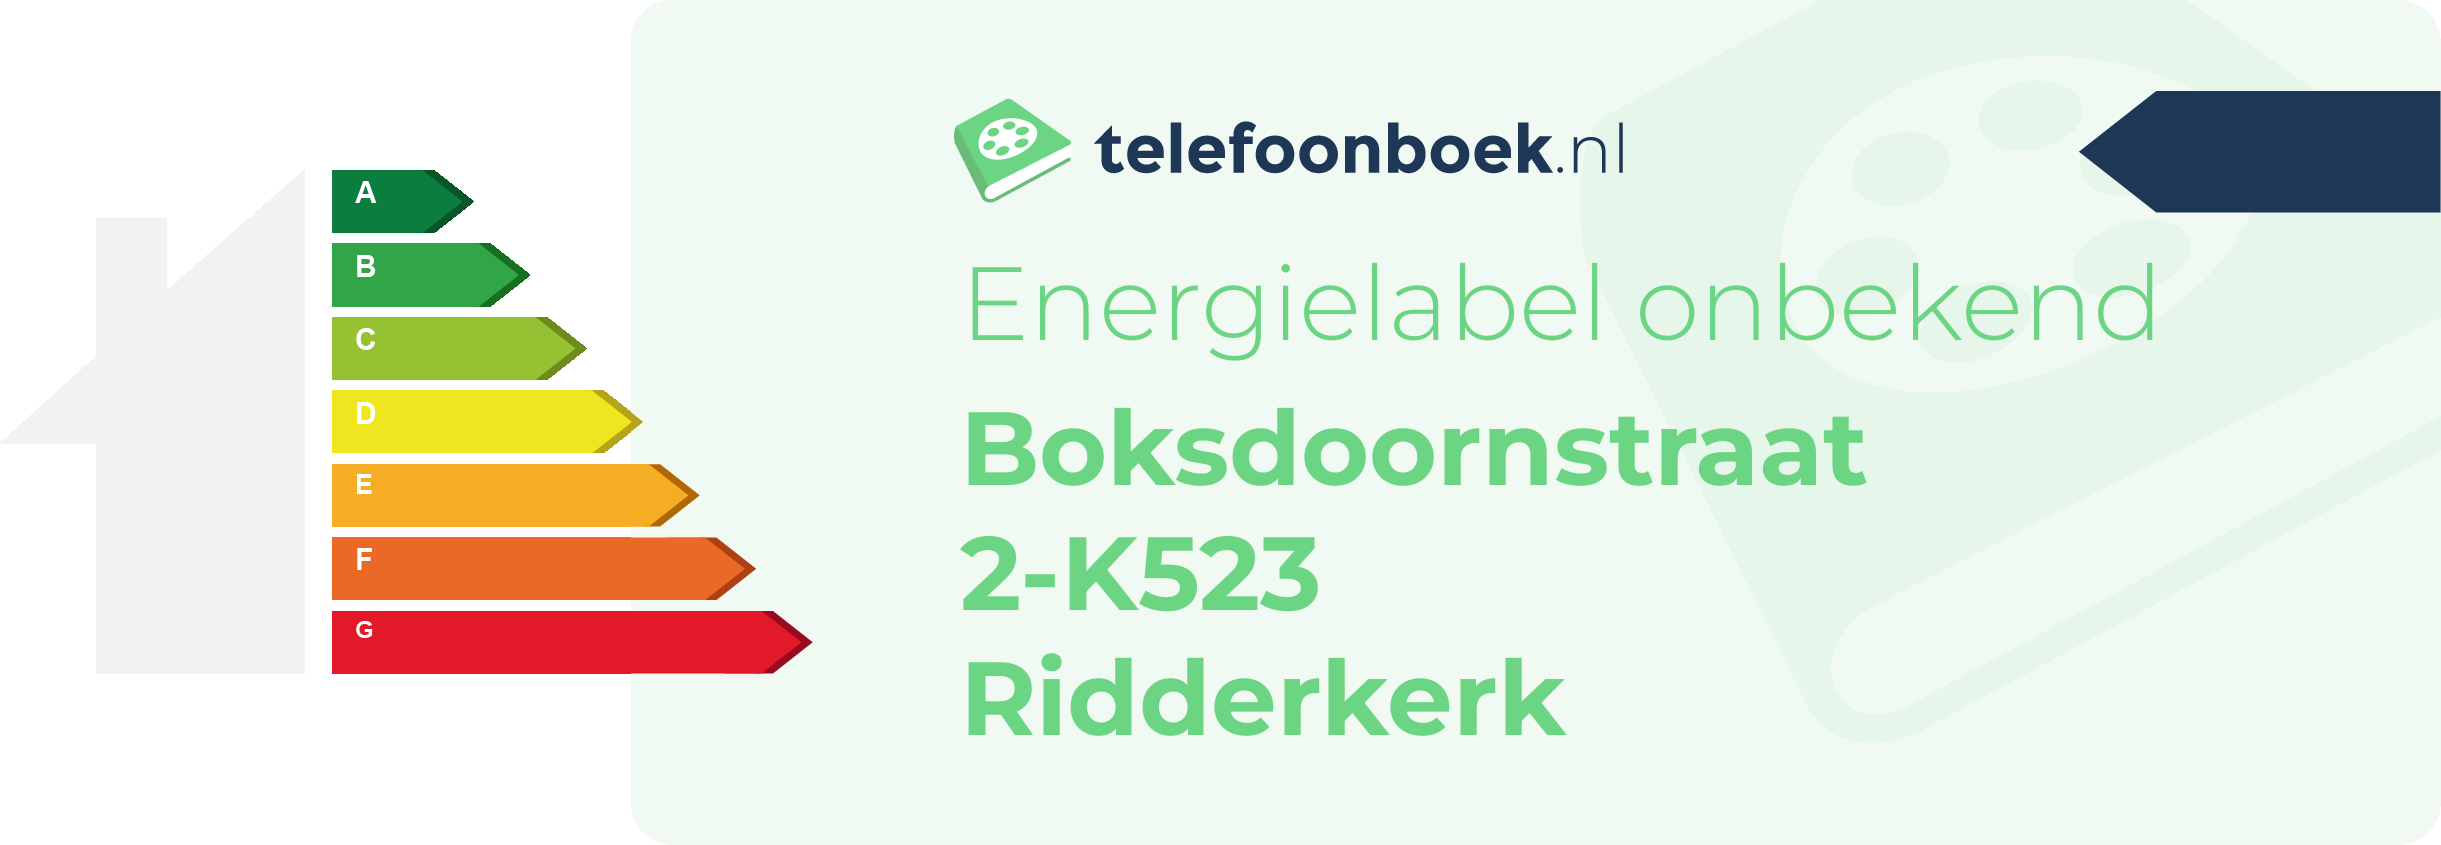 Energielabel Boksdoornstraat 2-K523 Ridderkerk